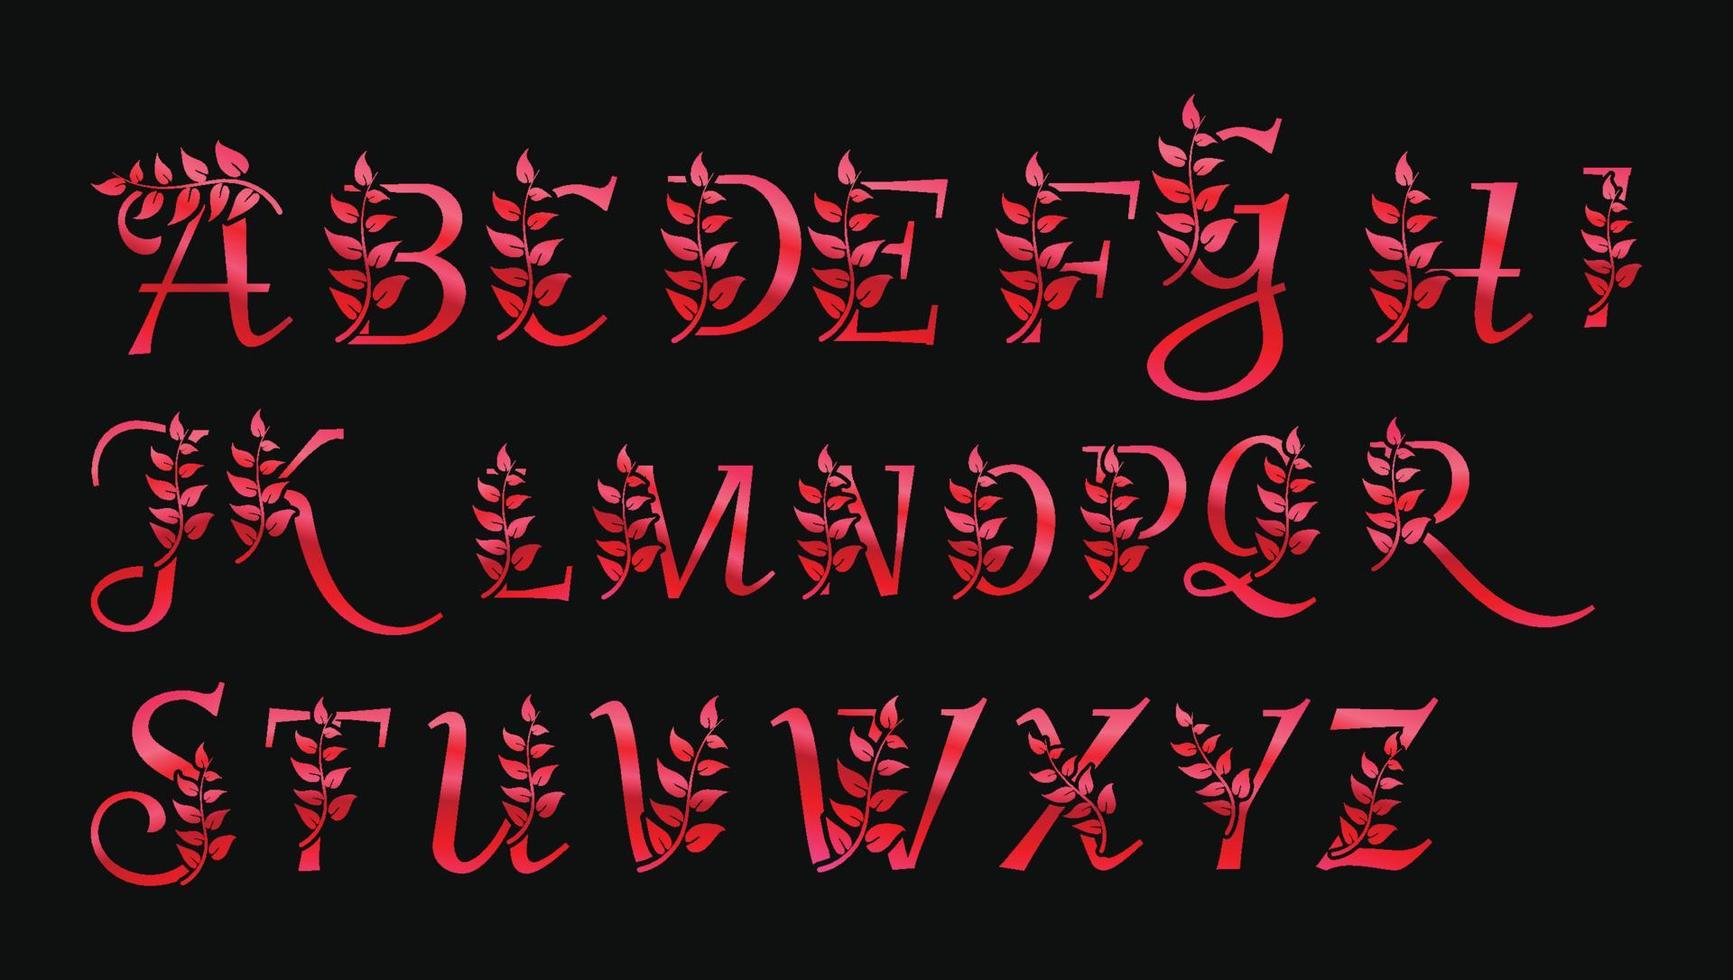 Plantillas de diseño de logotipo de monograma de alfabetos abc de letras rojas metálicas decorativas de lujo vector